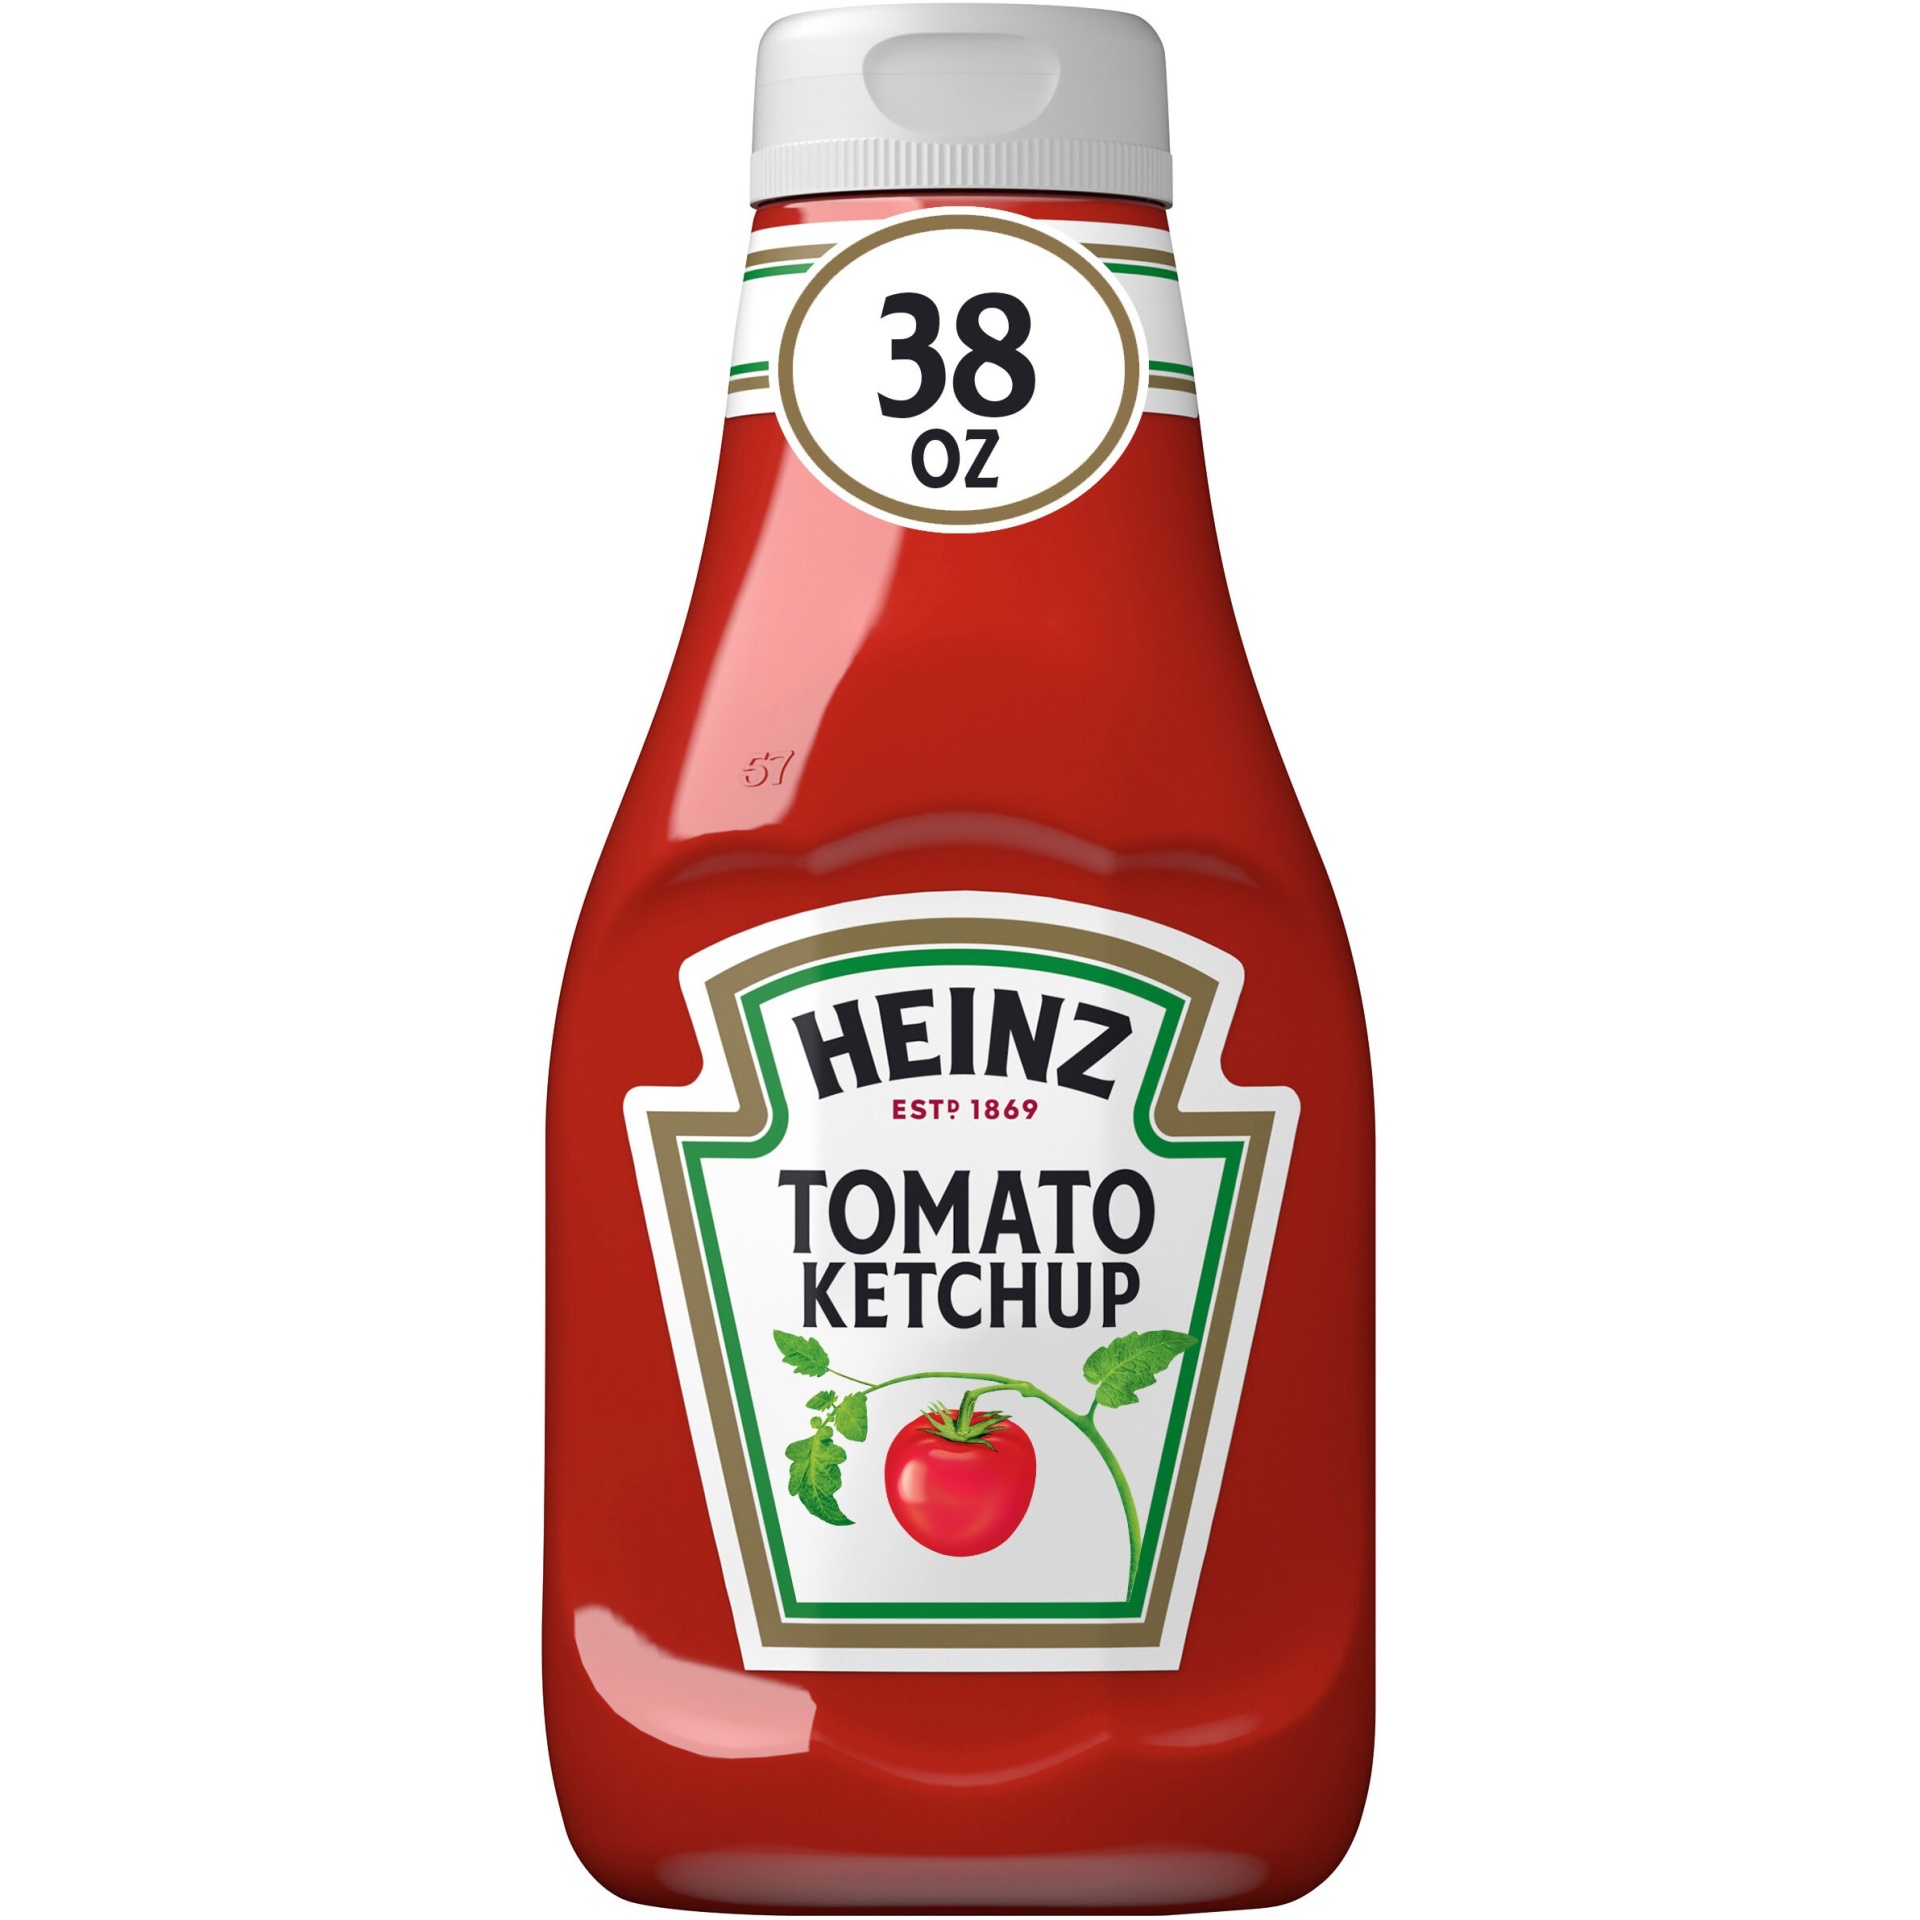 slide 1 of 13, Heinz Tomato Ketchup - 38oz, 38 oz